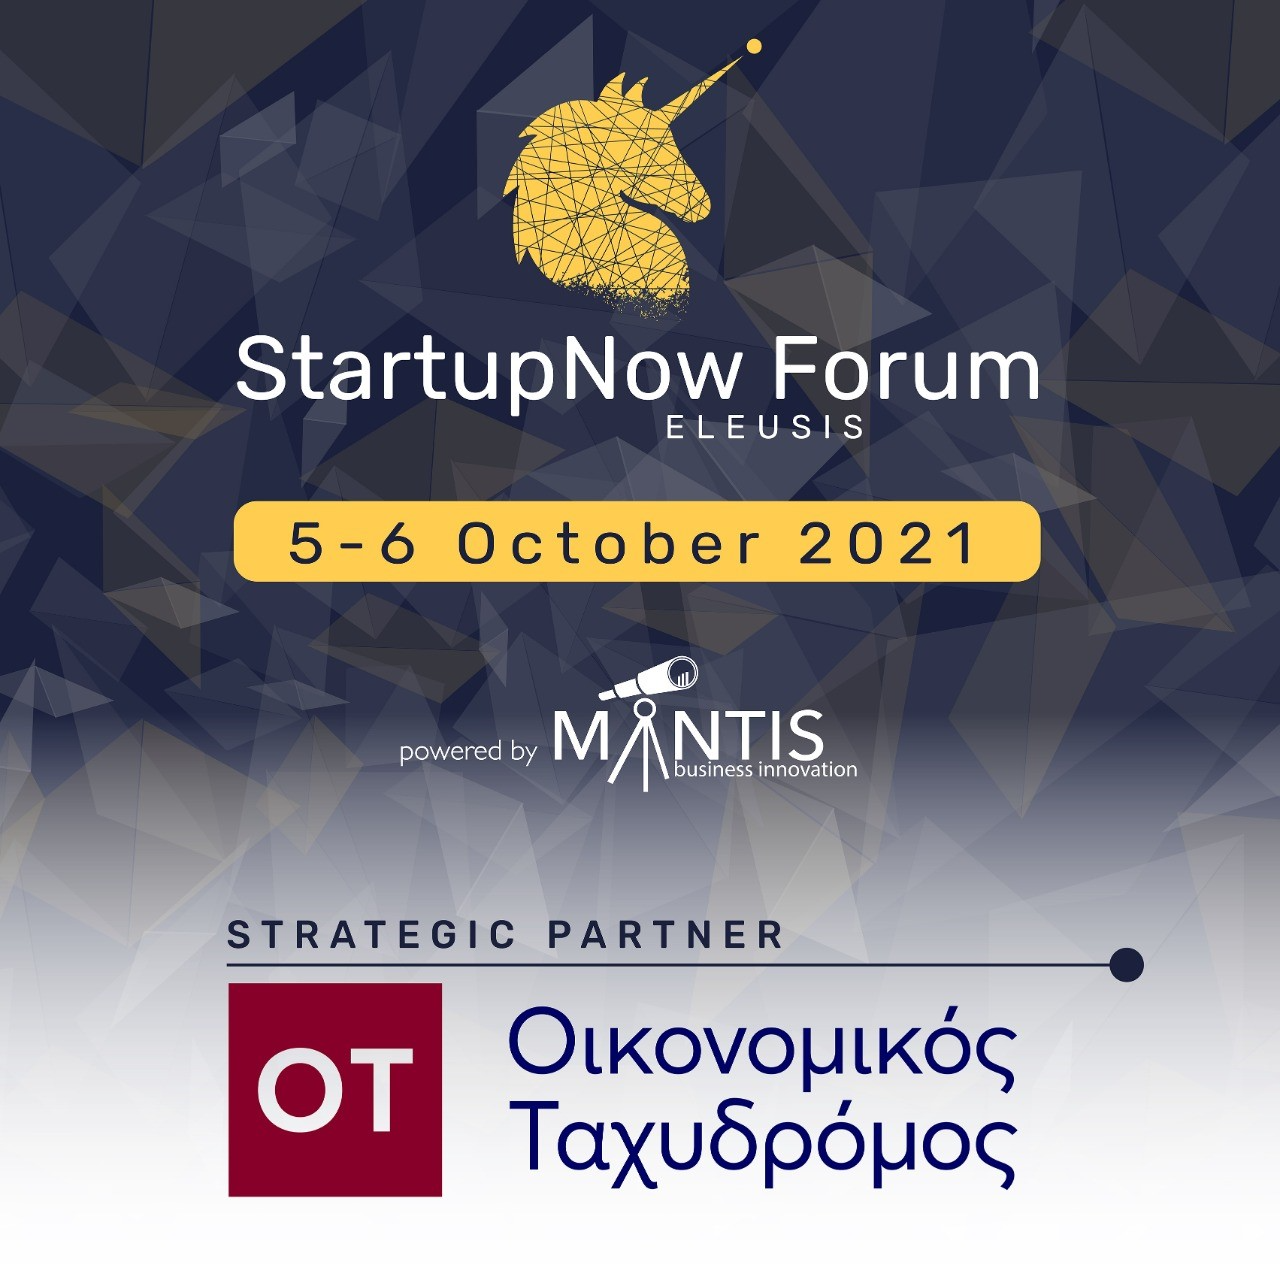 Ο Οικονομικός Ταχυδρόμος στρατηγικός εταίρος στο StartupNow Forum